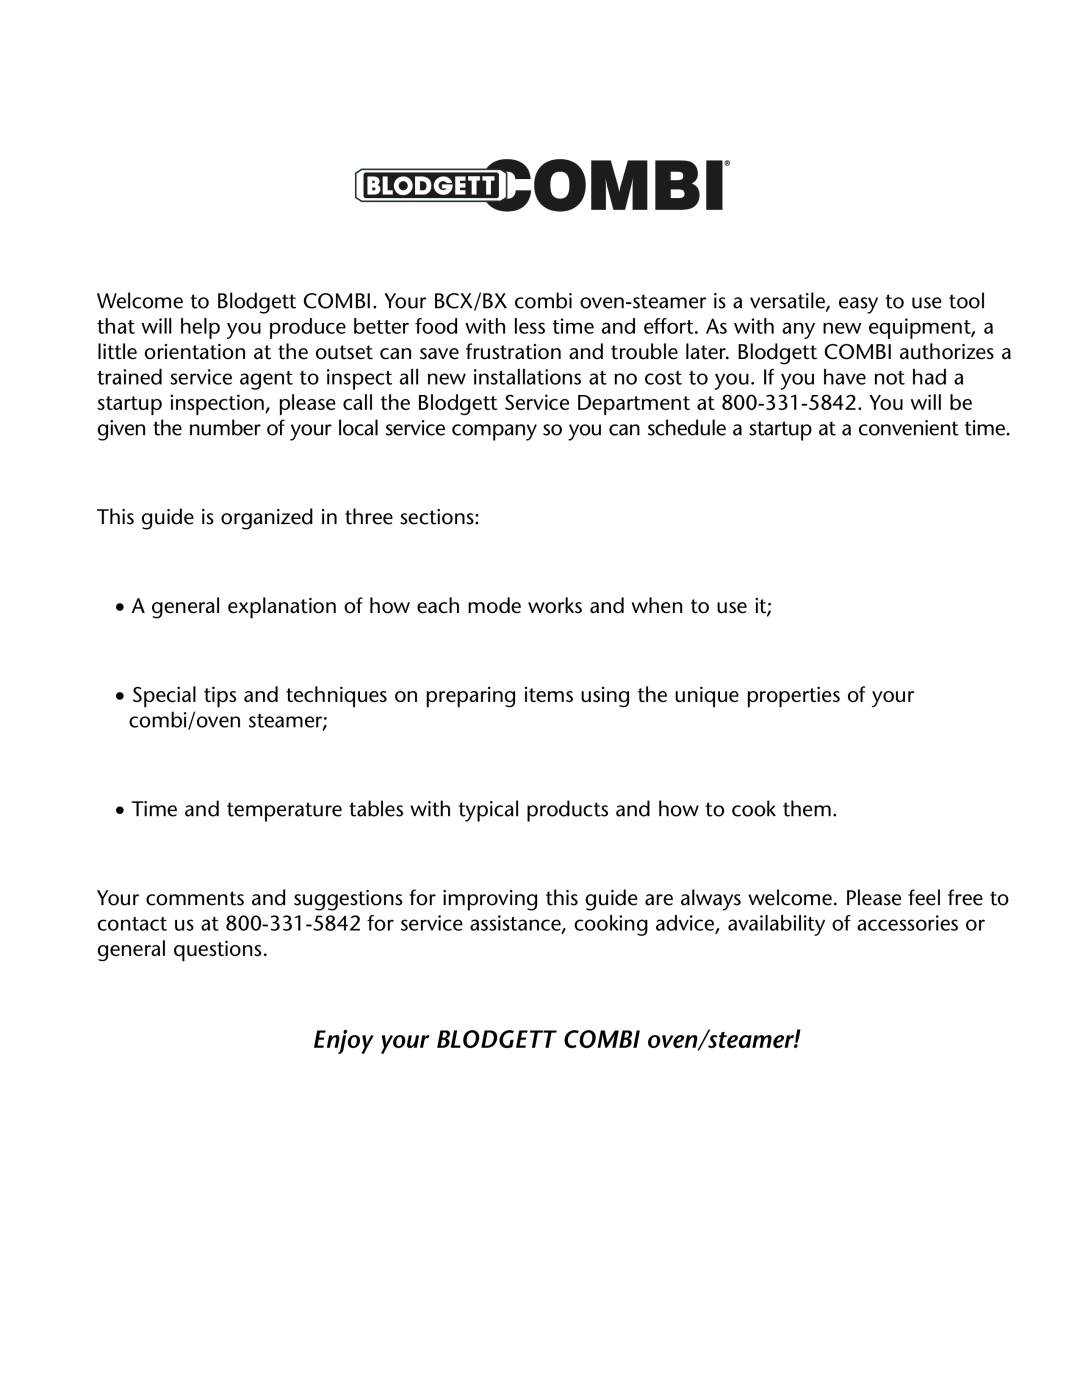 Blodgett BCX -14, BX-14 manual Enjoy your BLODGETT COMBI oven/steamer 